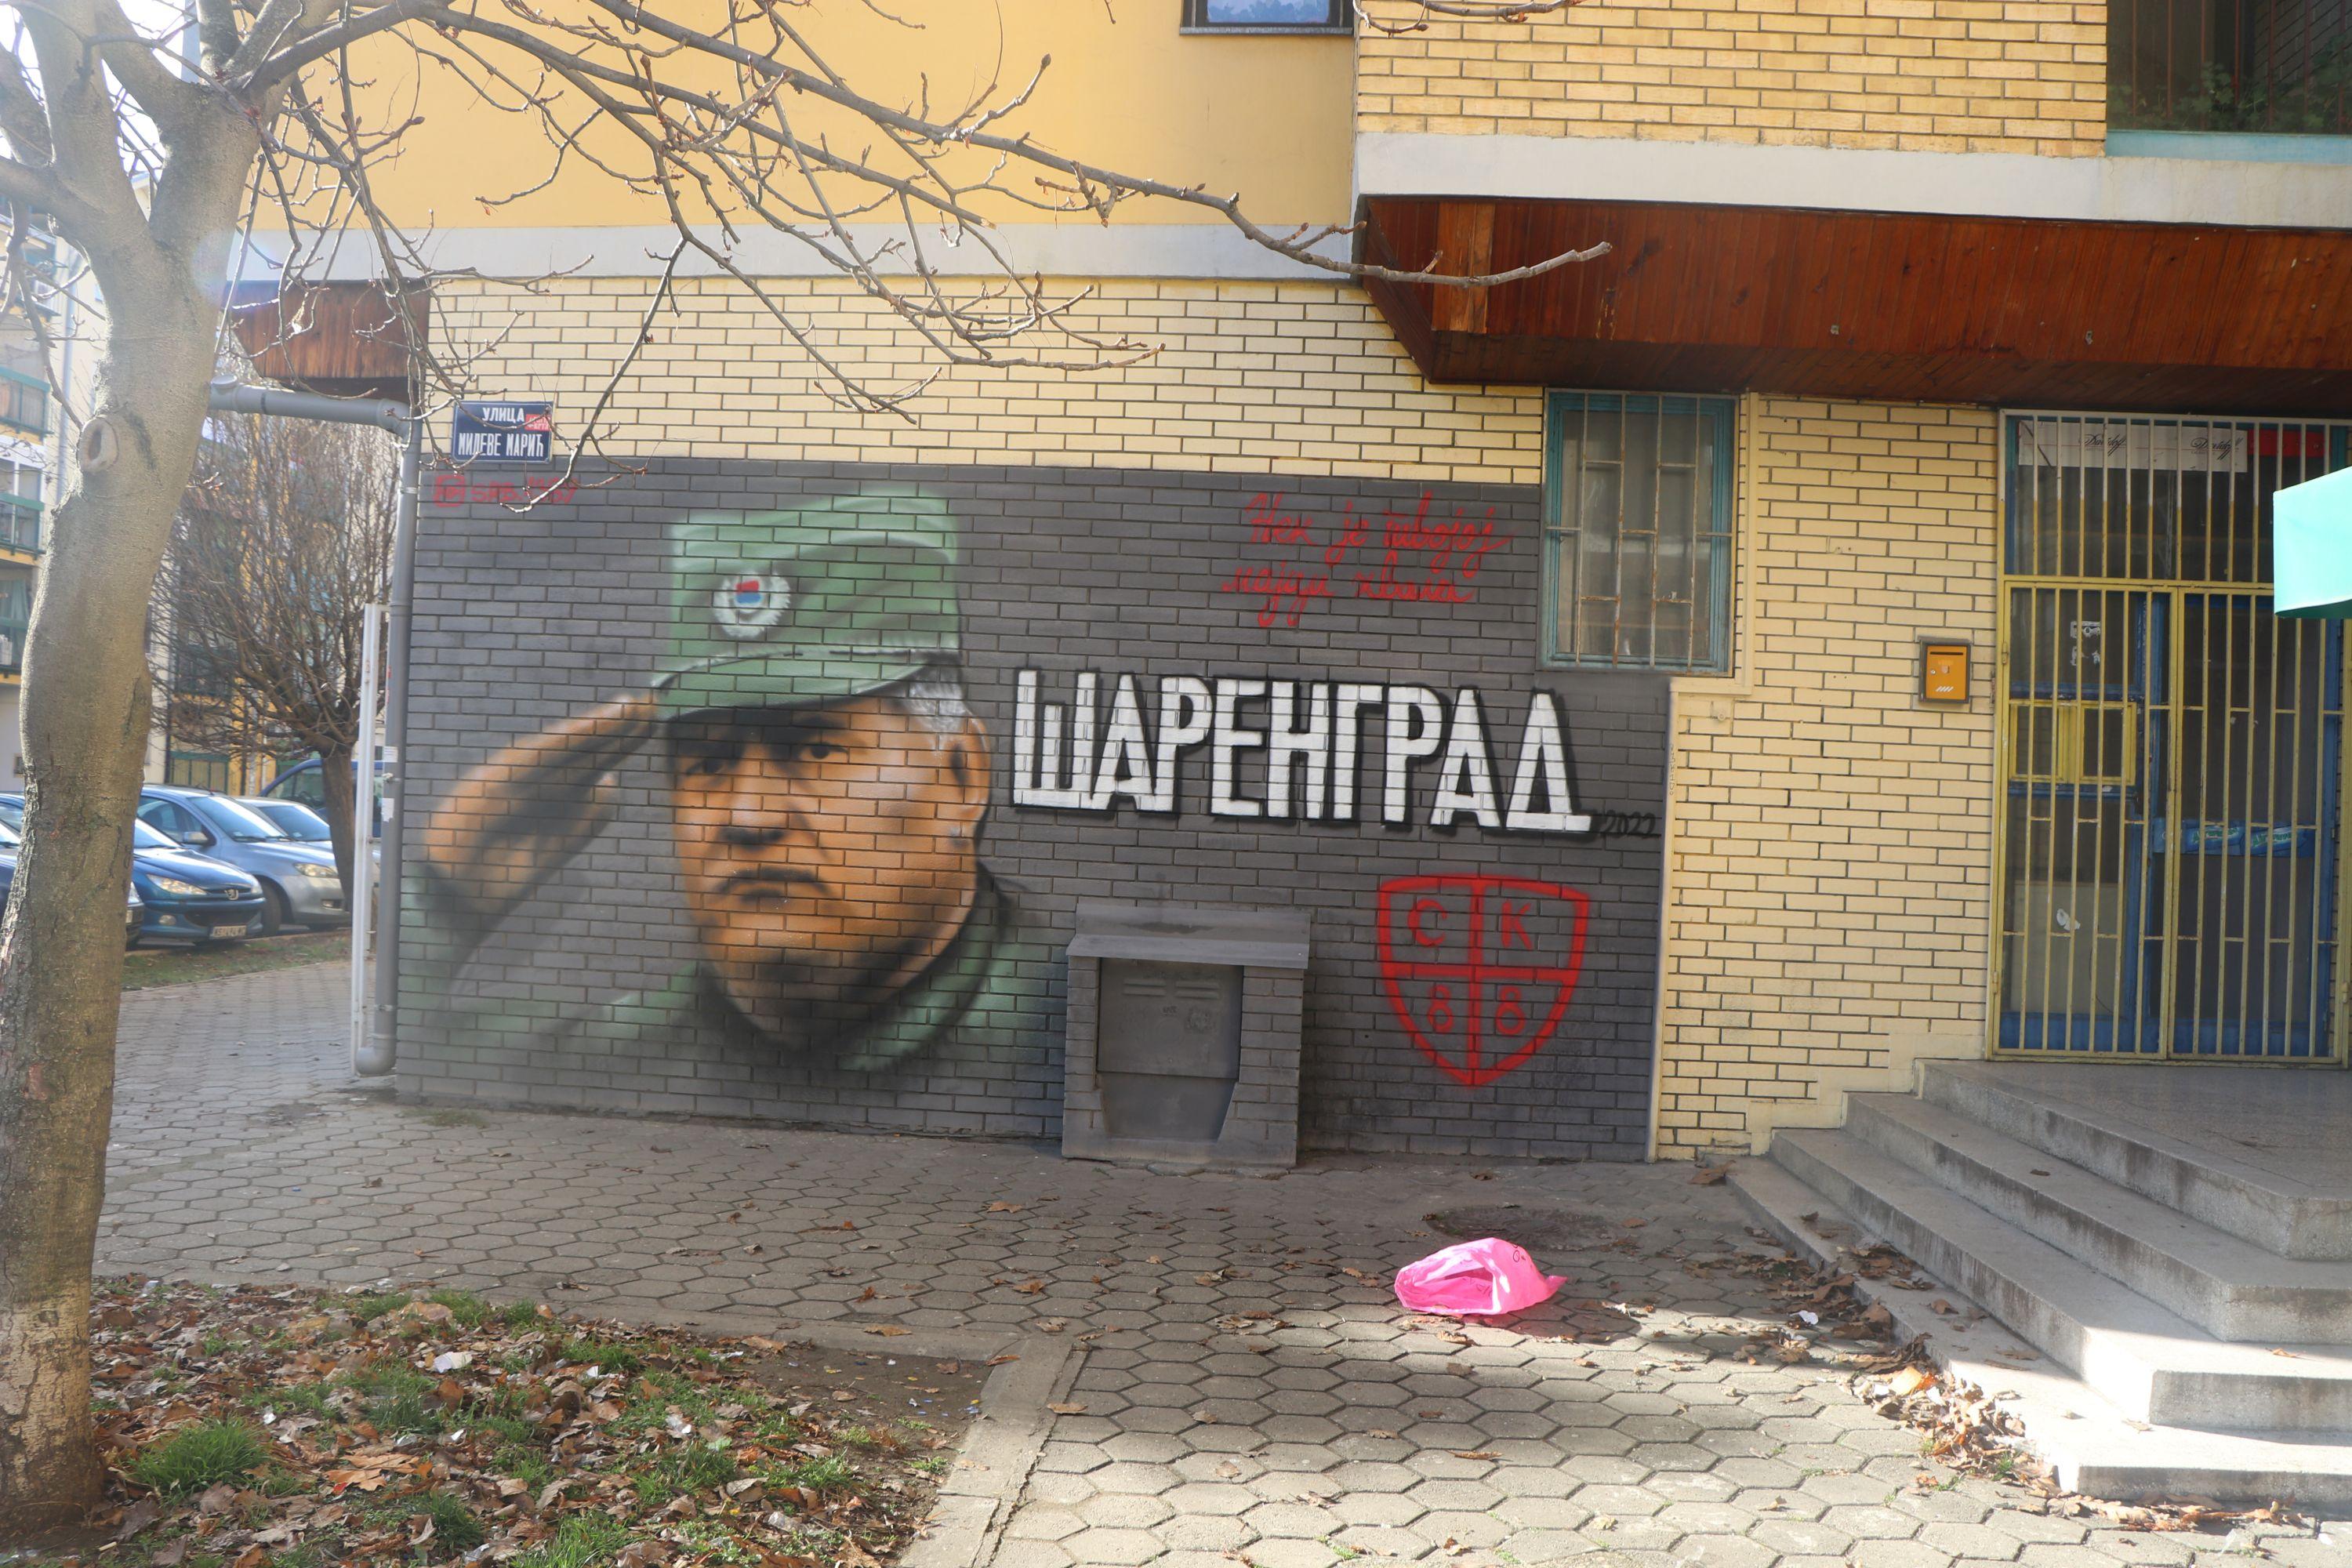 Još jedan sramni mural u Srbiji: Ratni zločinac Ratko Mladić oslikan na stambenoj zgradi u Novom Sadu